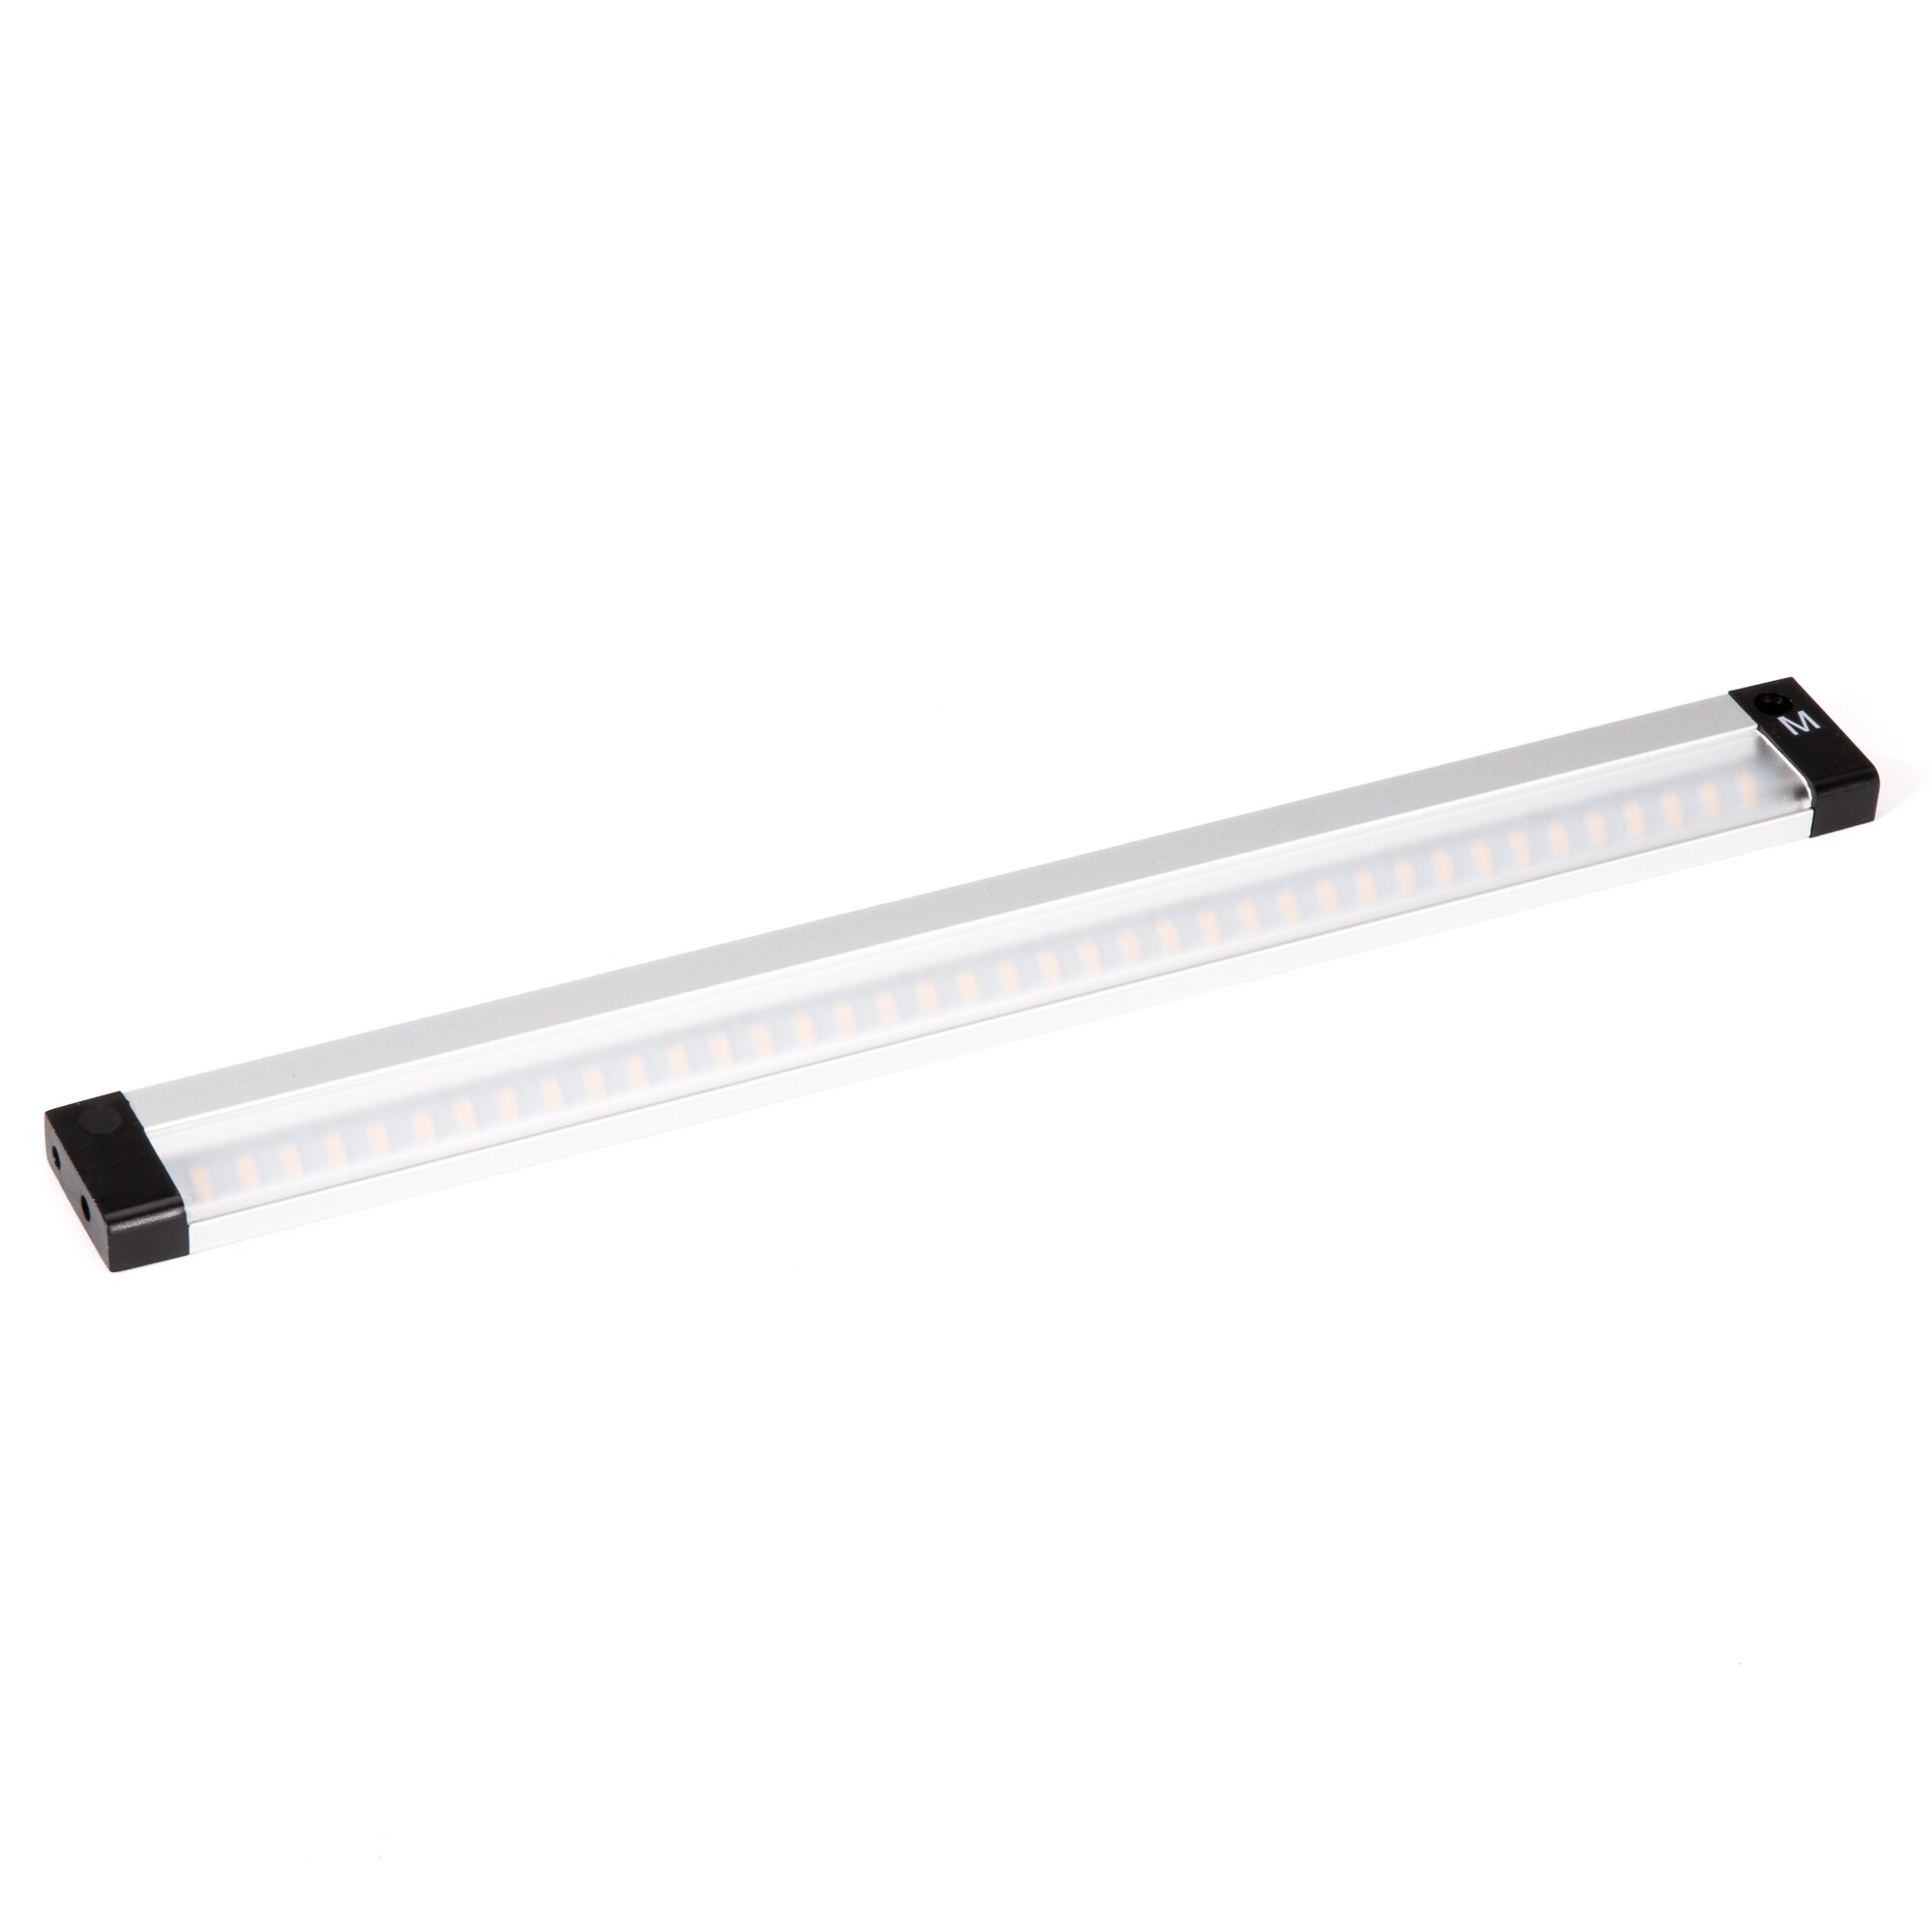 Utilitech Linkable Plug-in Under Cabinet LED Motion Light Expansion Kit 0709226 